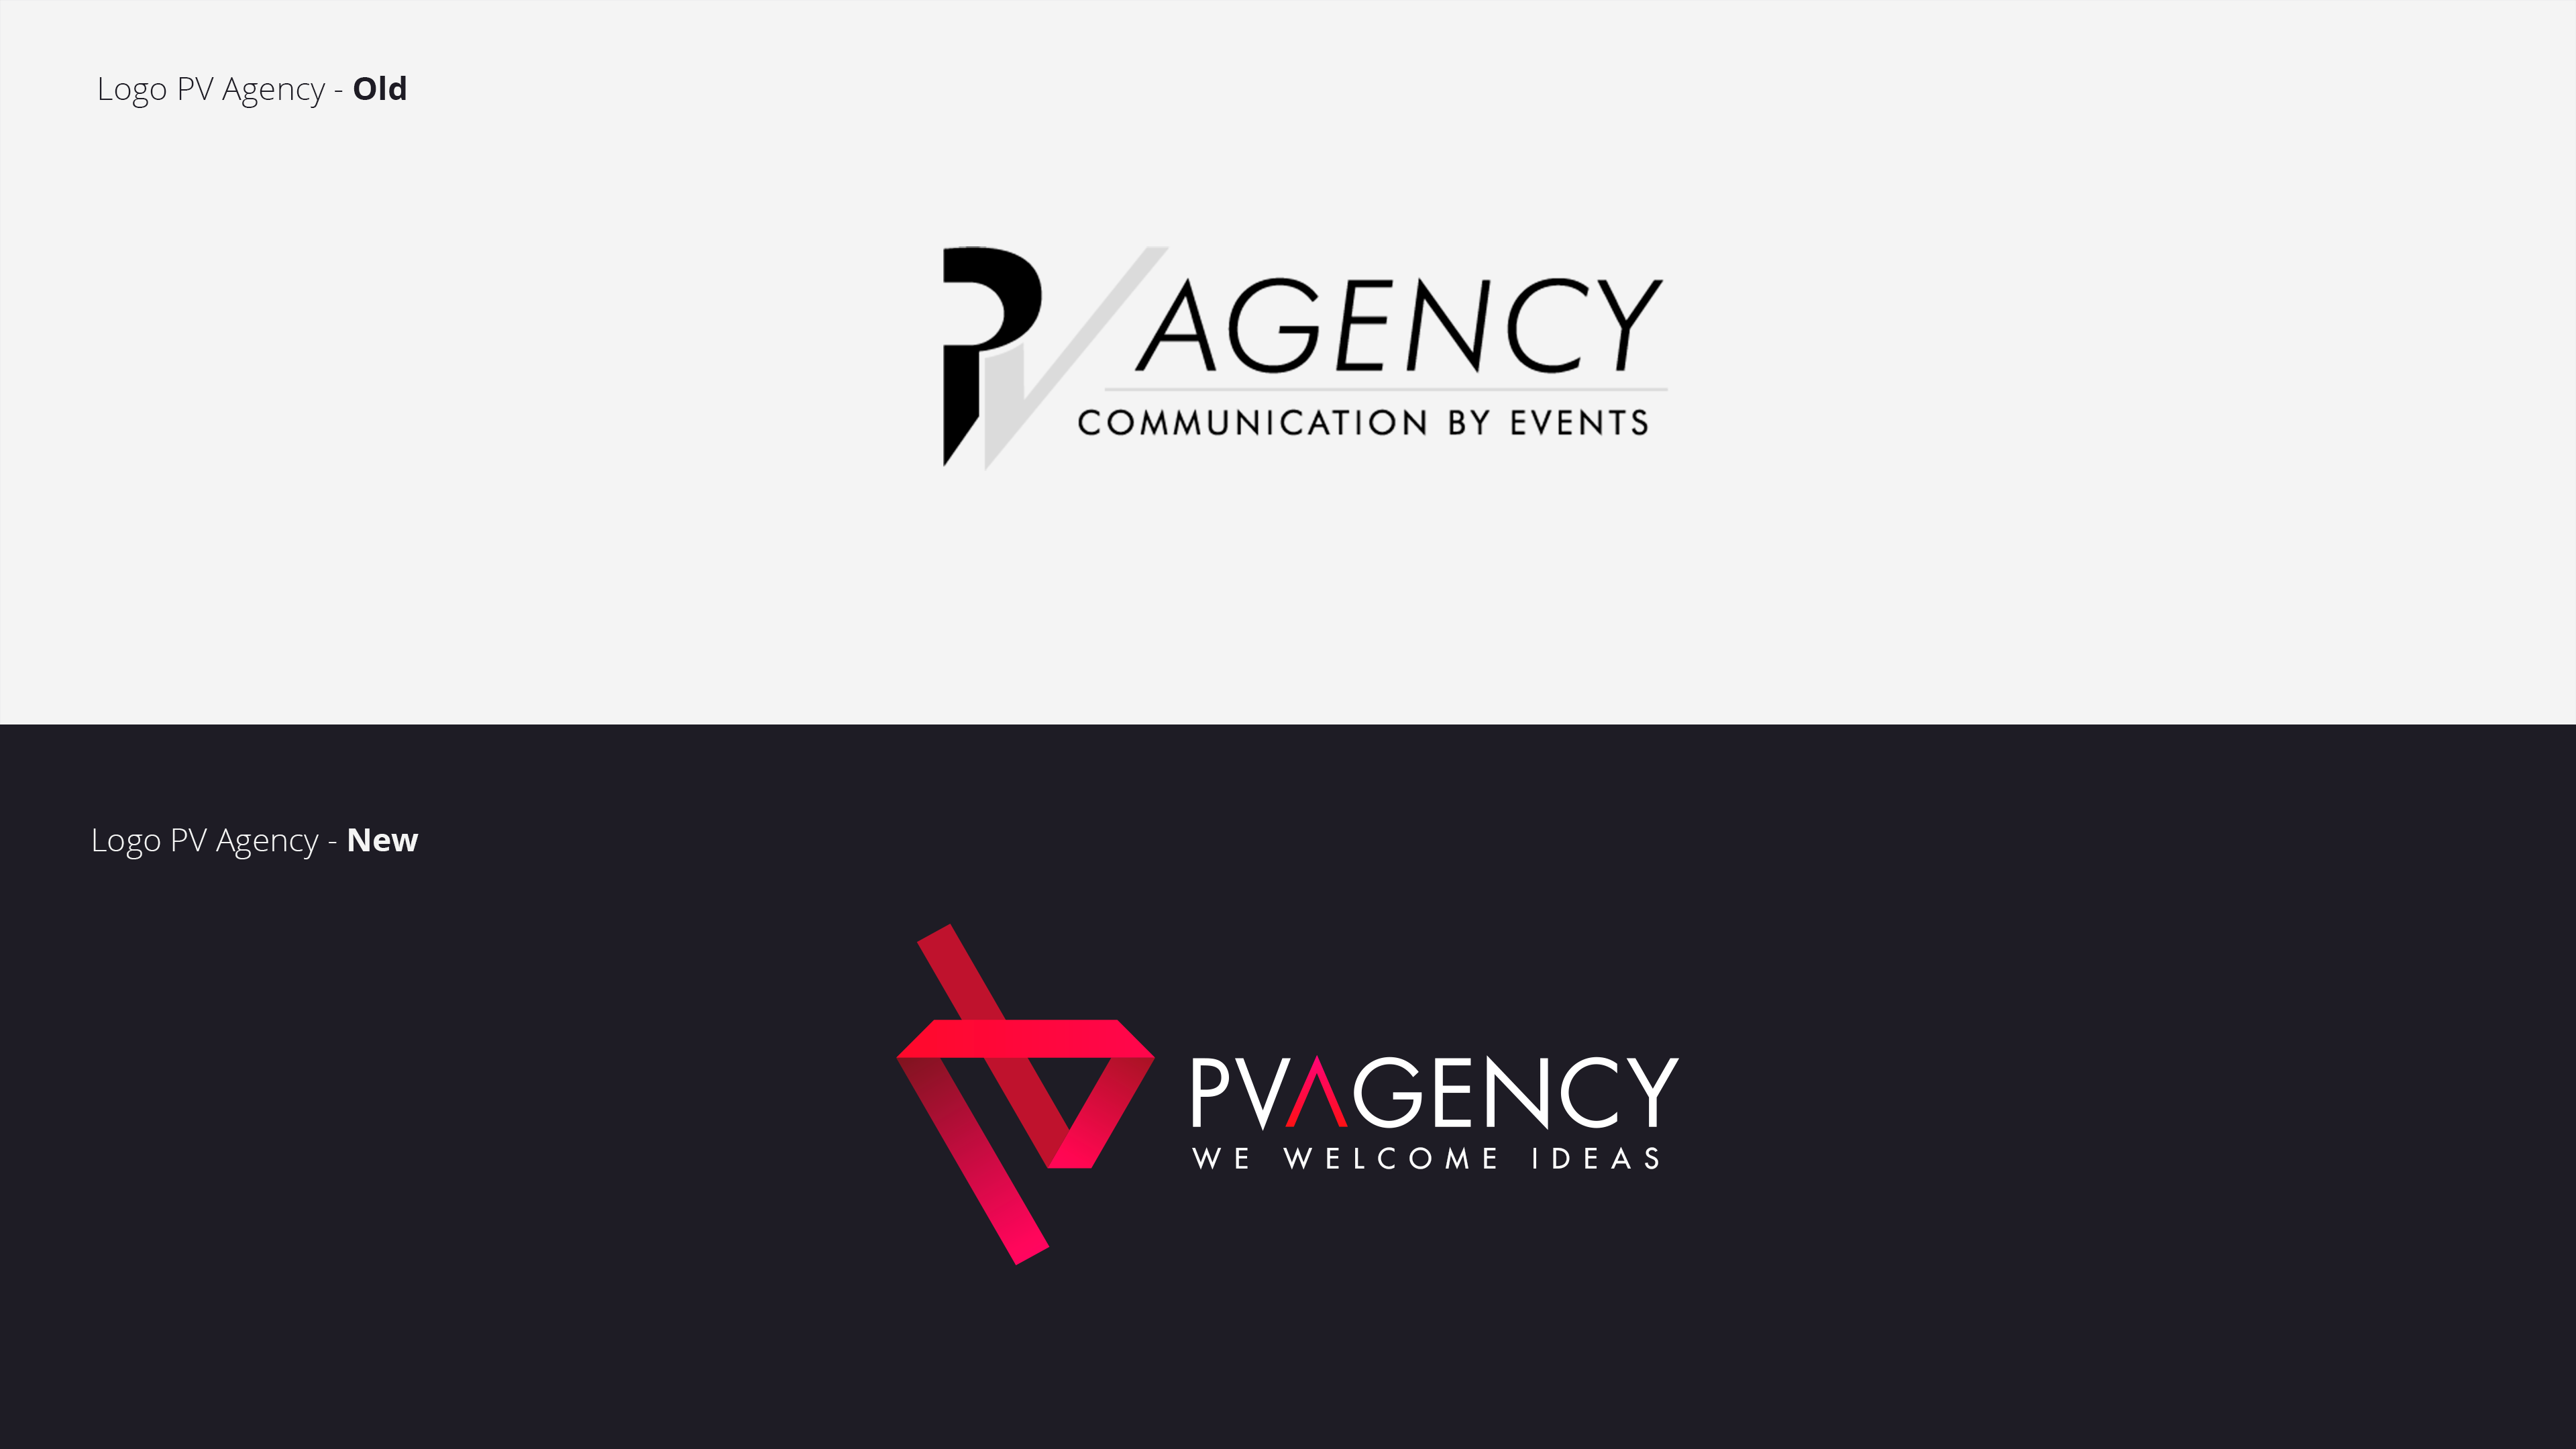 02_Pv-Agency-Rebranding